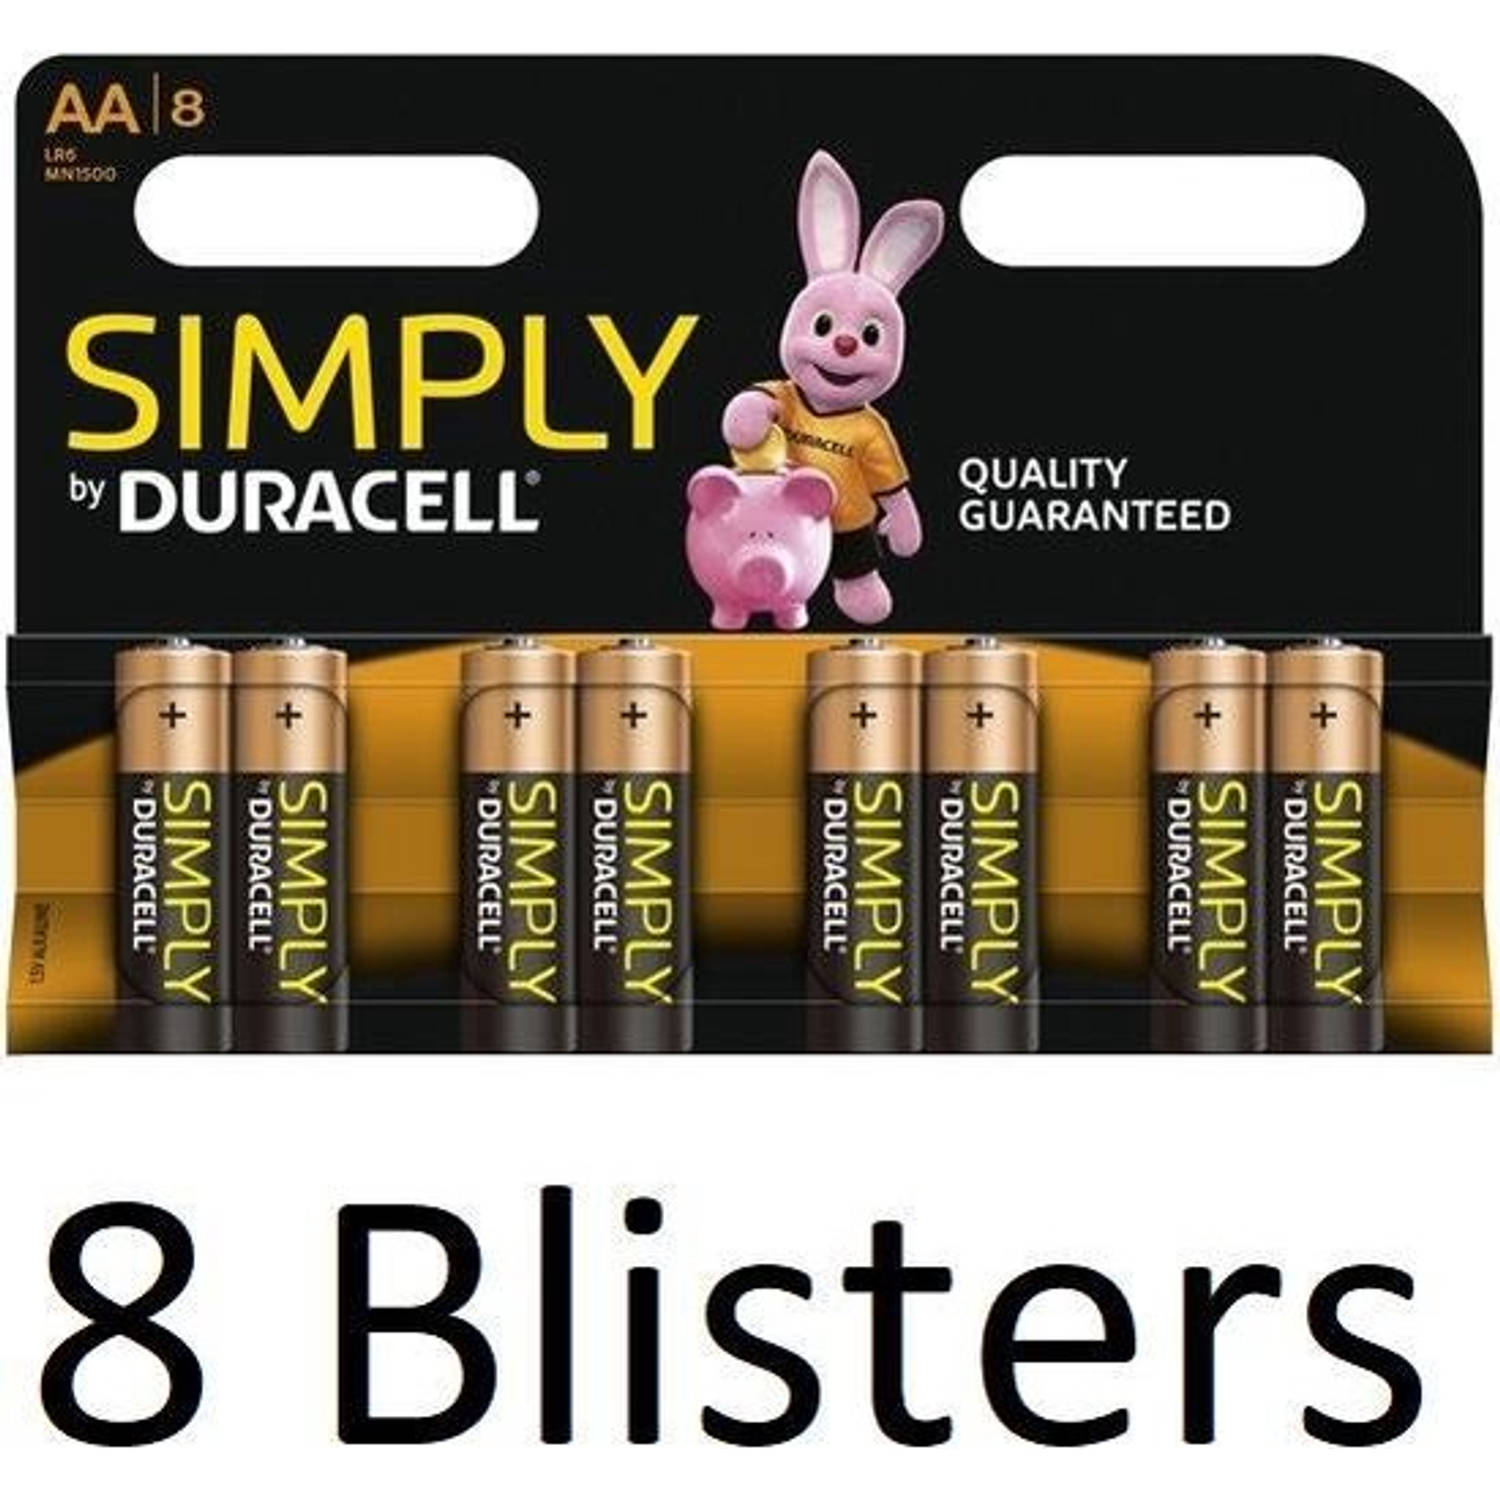 64 Stuks (8 Blisters a 8 st) Duracell AA Simply Batterijen